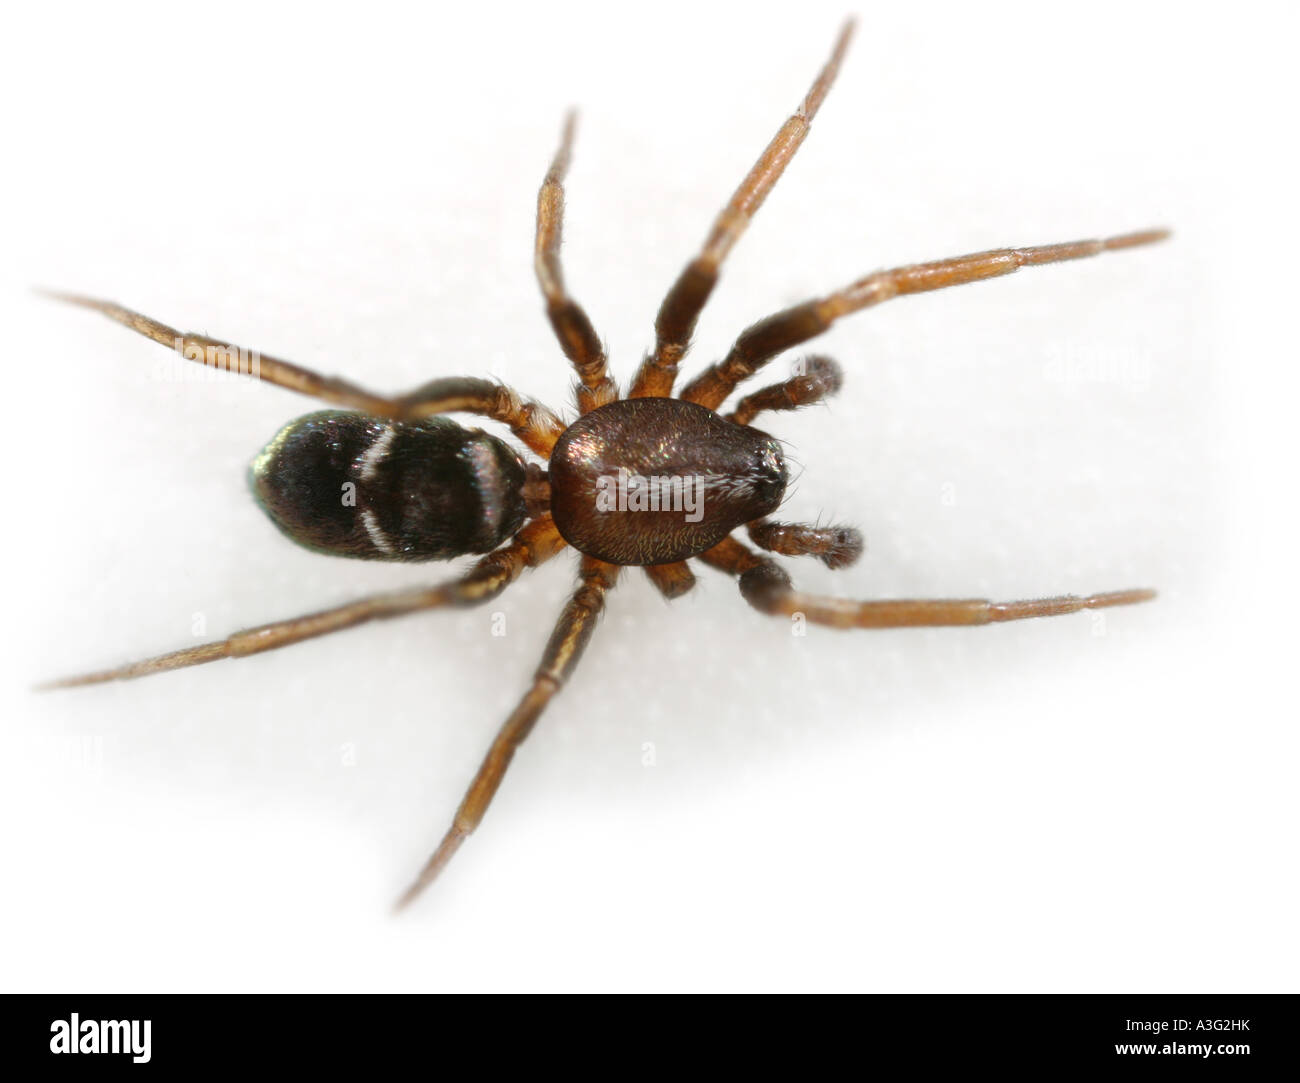 Micaria silesiaca spider, on white background. Stock Photo